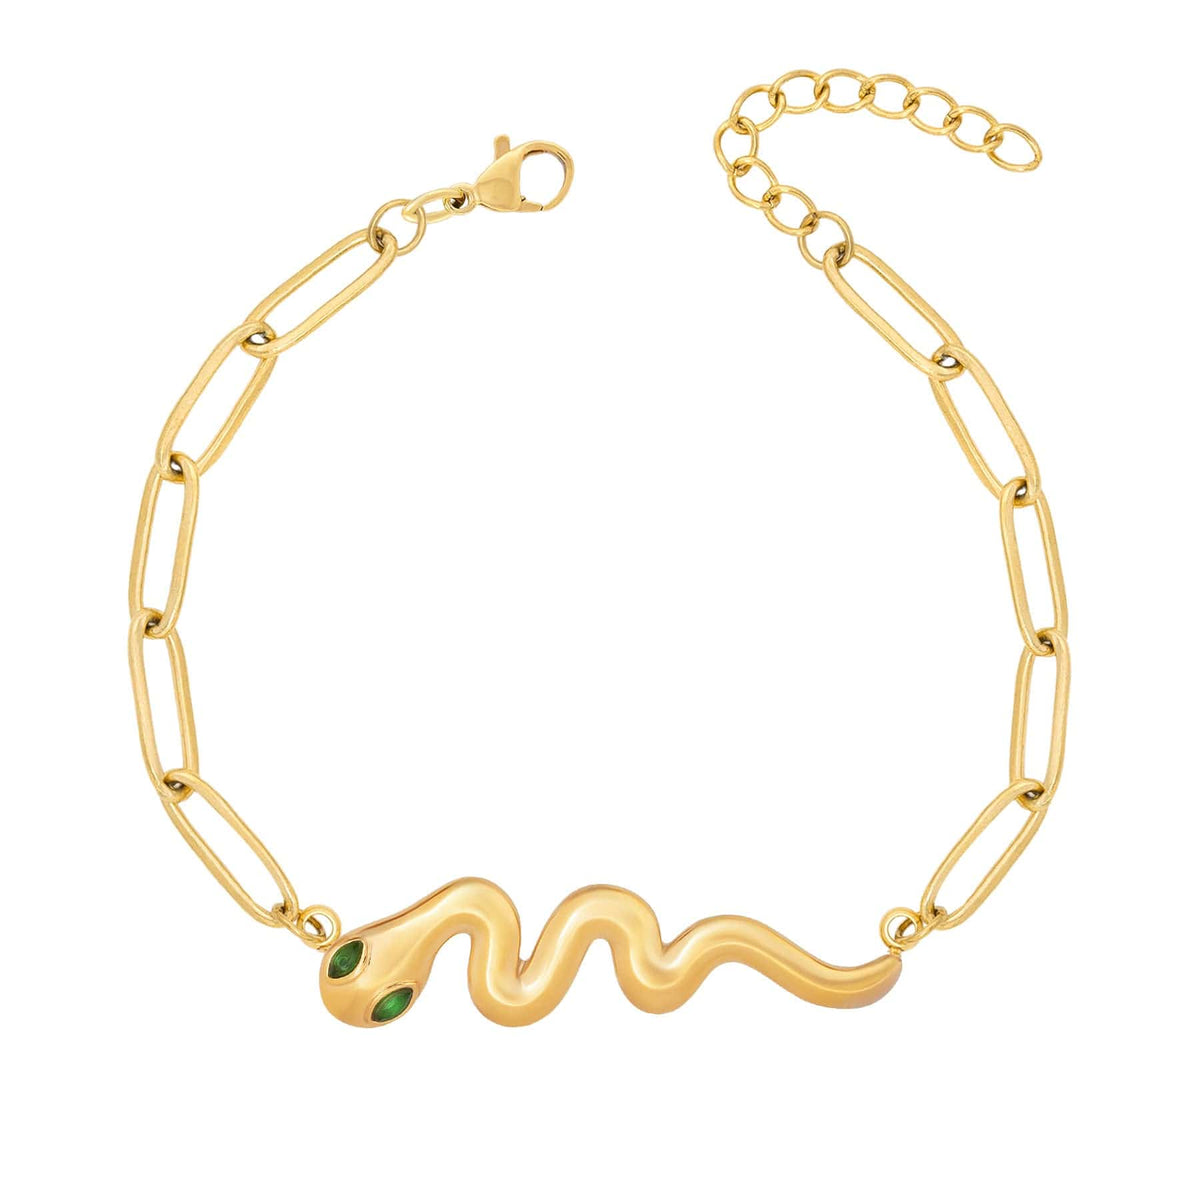 BohoMoon Stainless Steel Mambo Snake Bracelet Gold